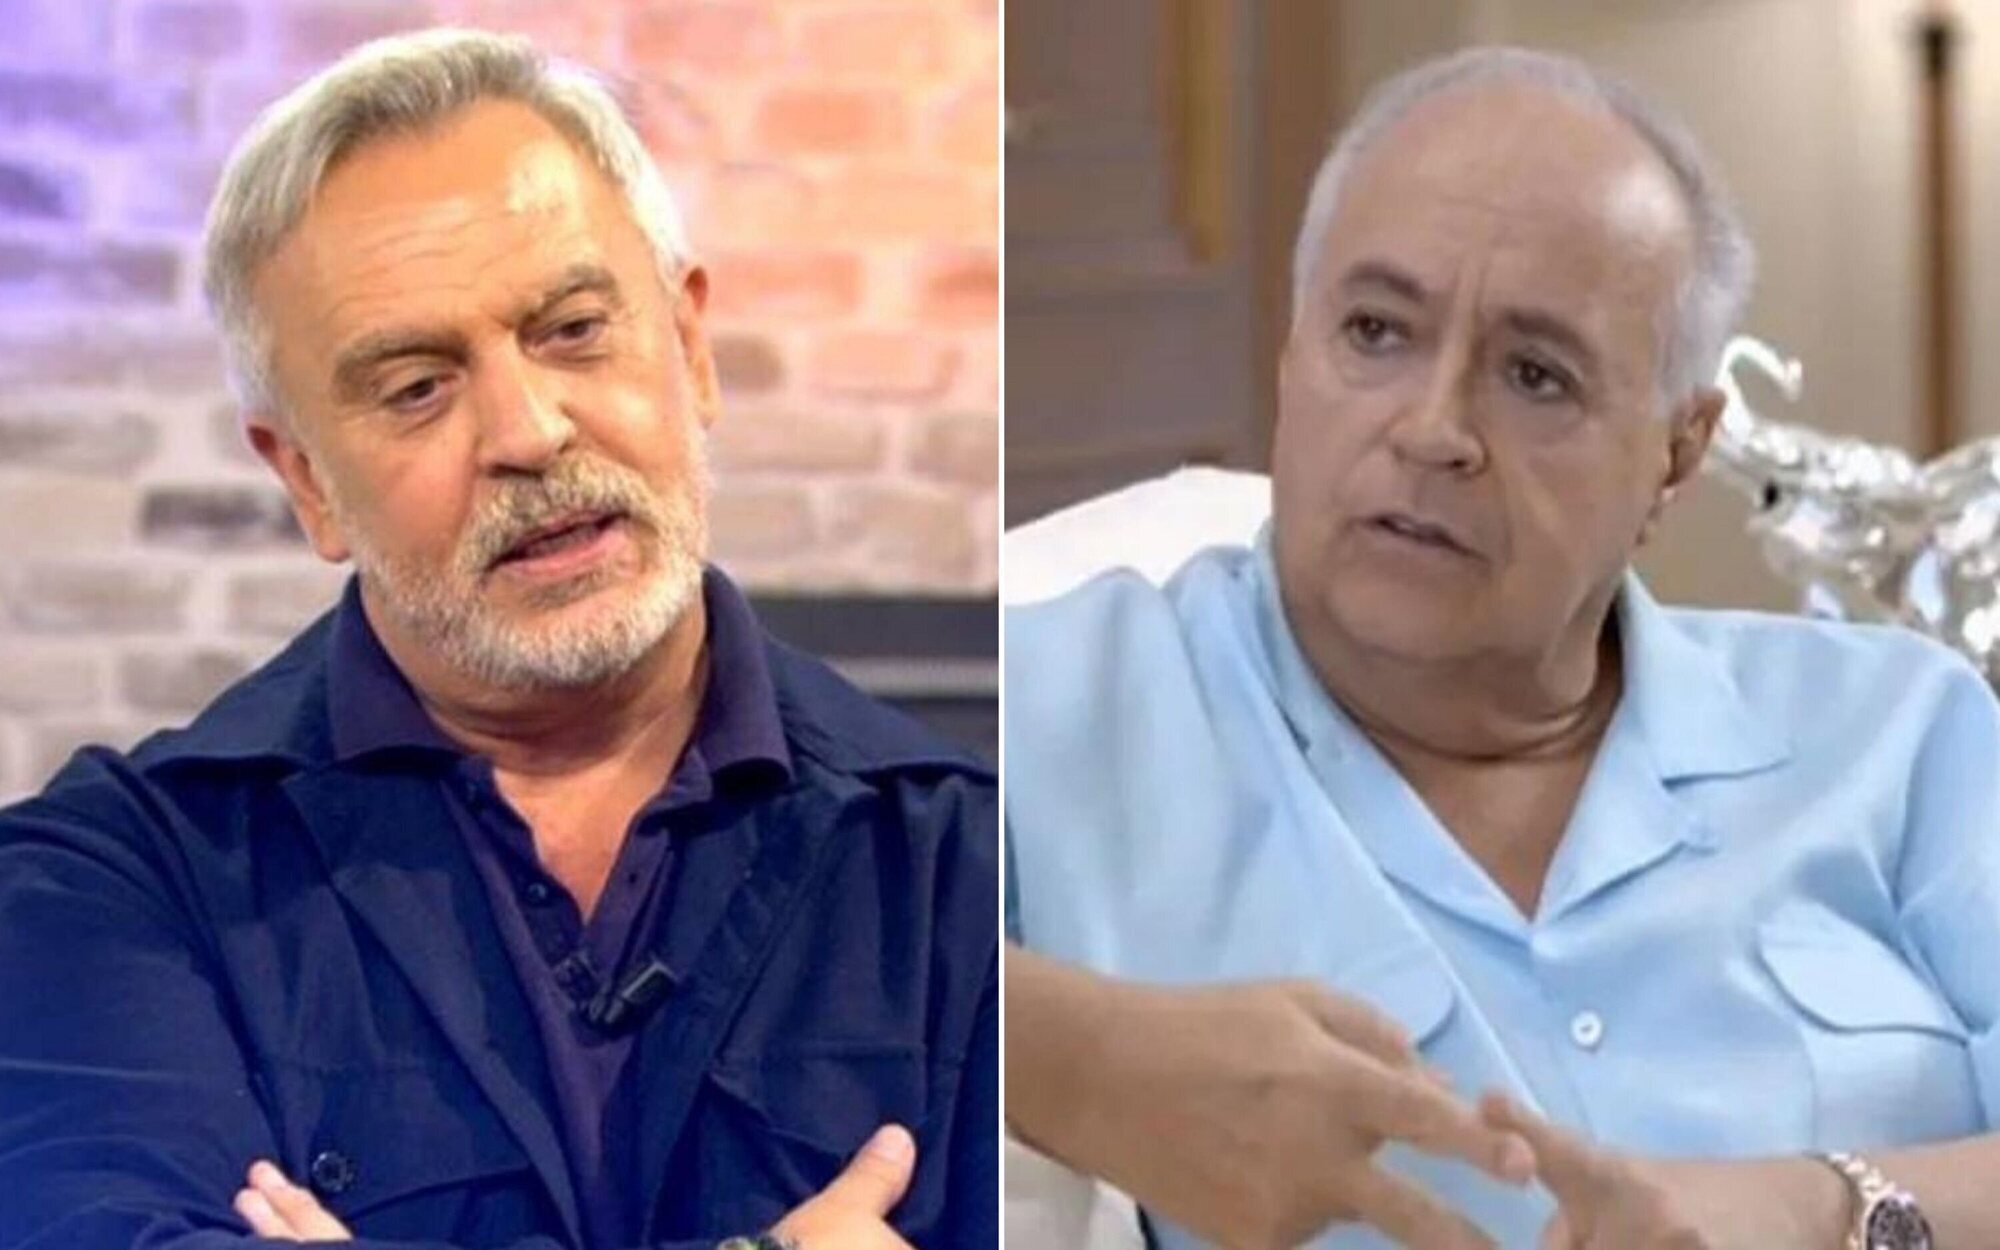 Enrique del Pozo narra su desagradable episodio con José Luis Moreno: "Me dijo que me metiera en su cama"